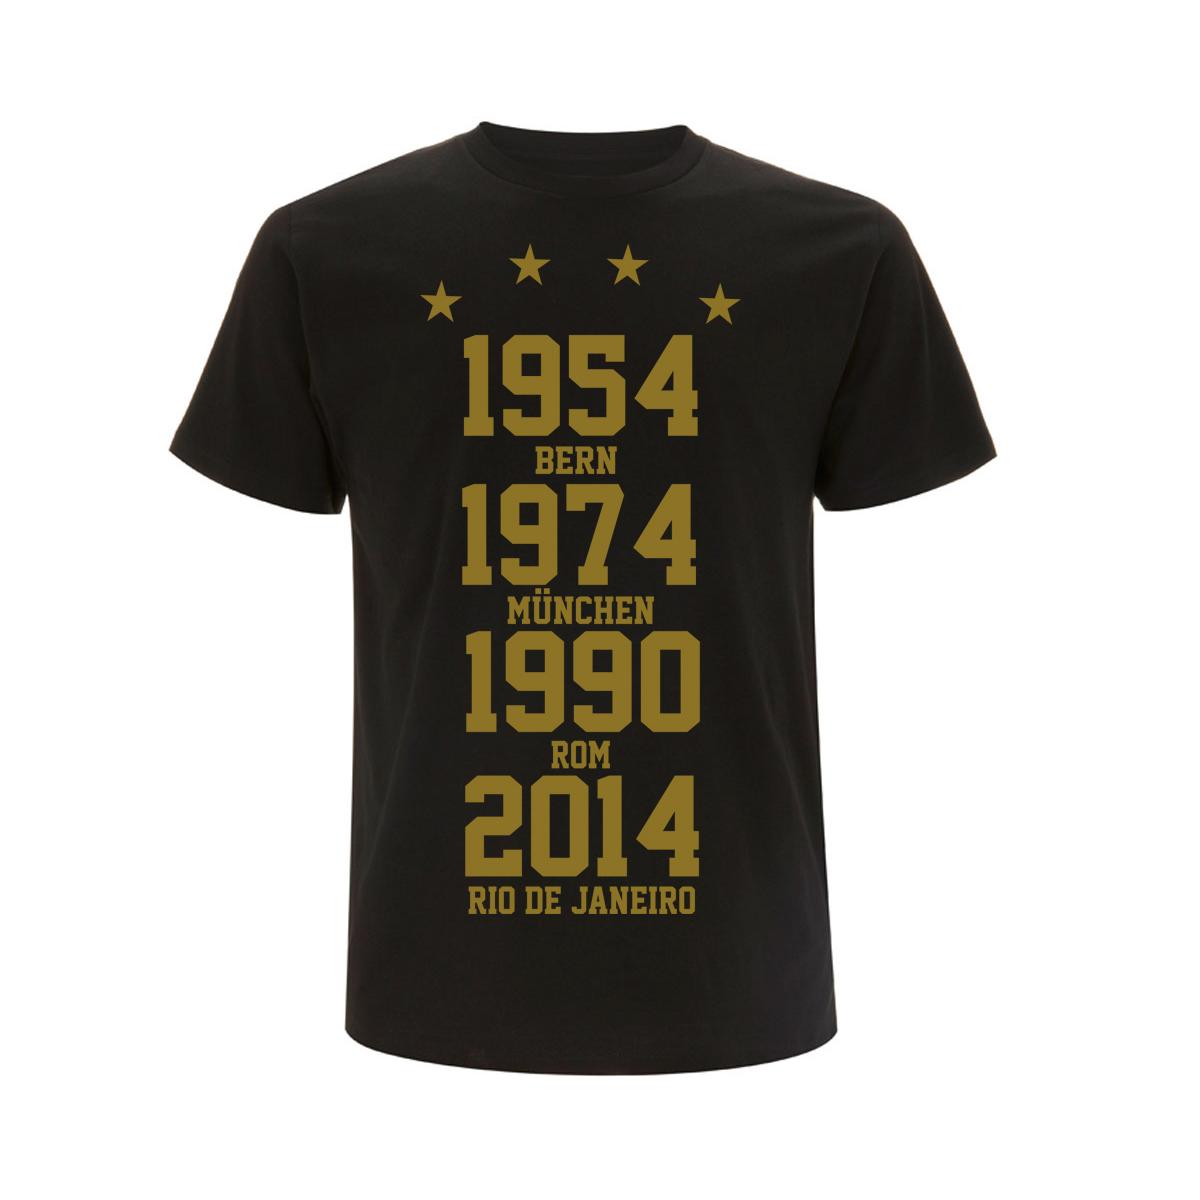 Weltmeister 54-74-90-14 - Männer T-Shirt - schwarz-gold